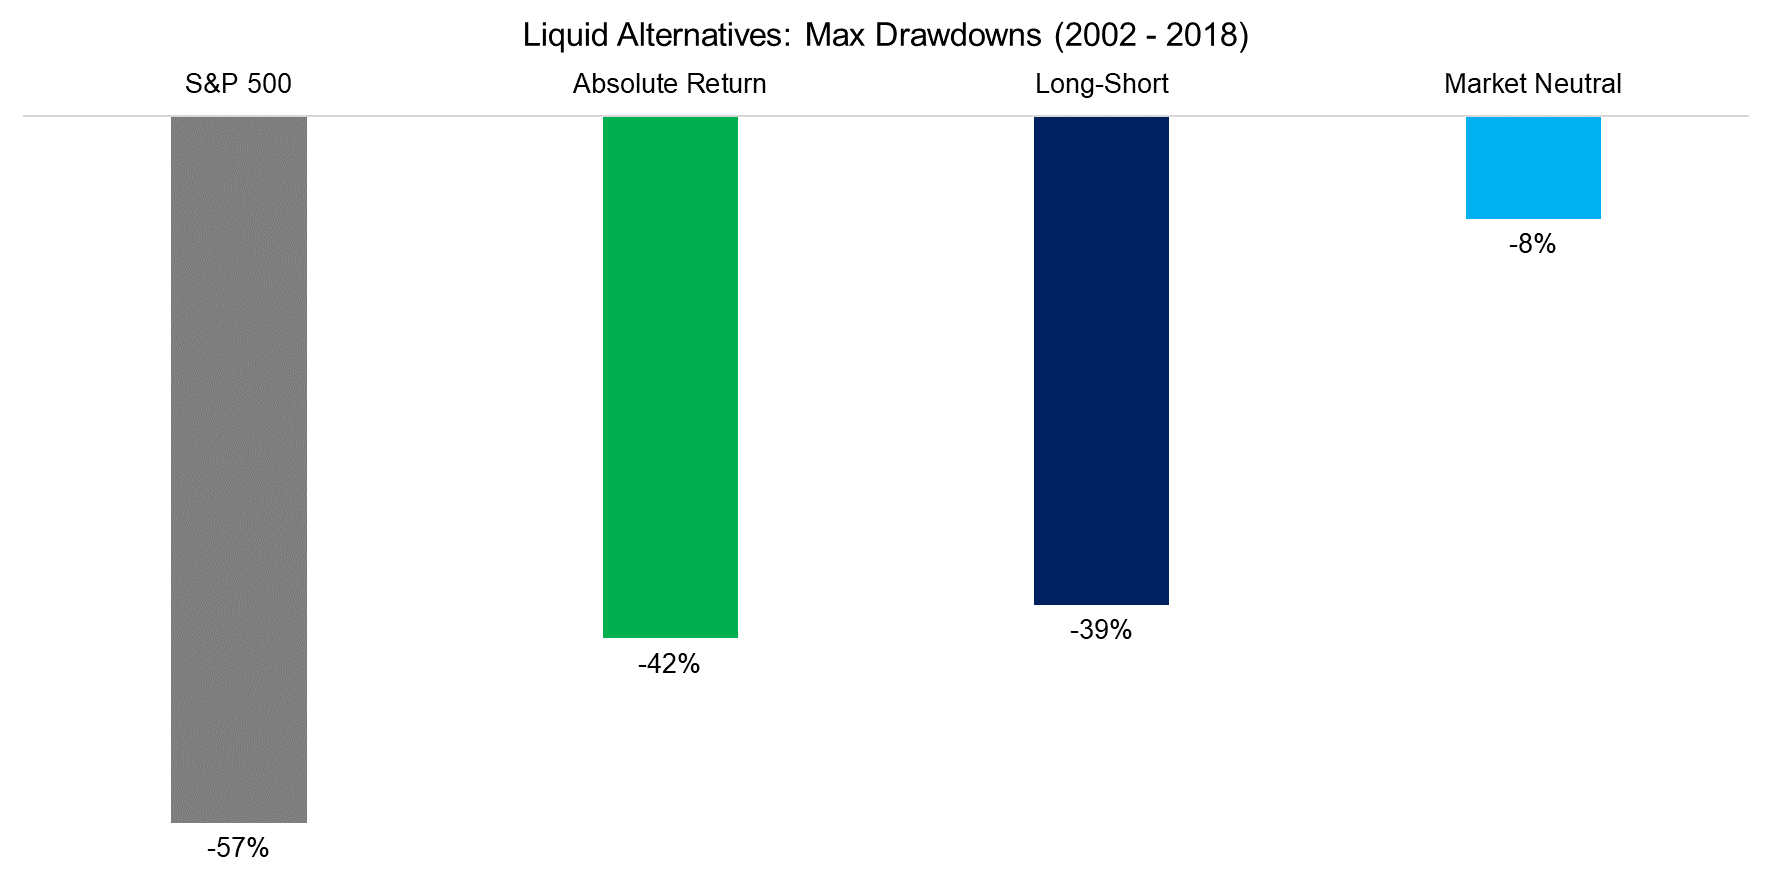 Liquid Alternatives Max Drawdowns (2002 - 2018)